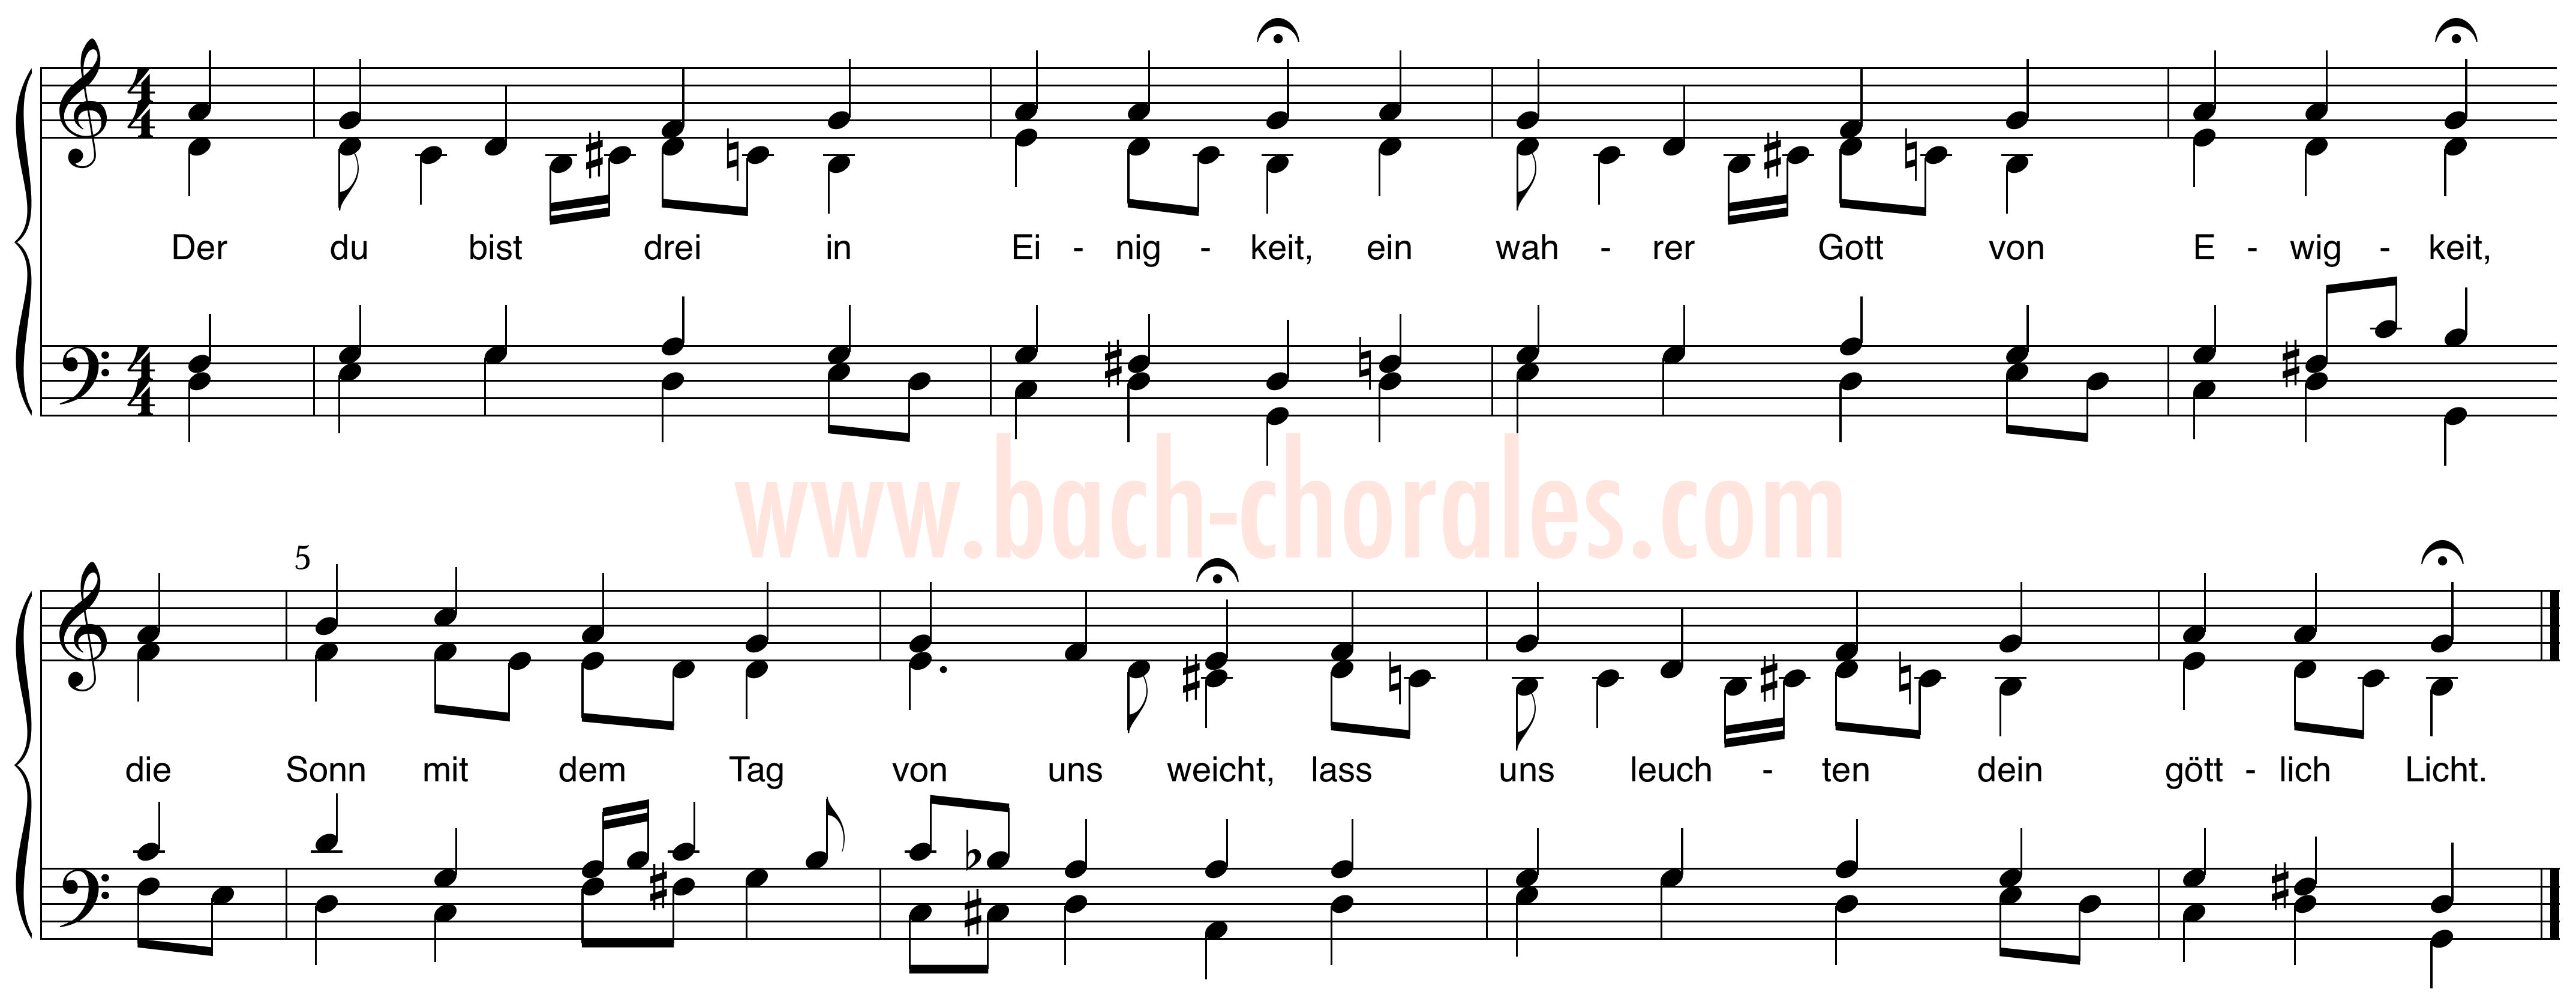 notenbeeld BWV 293 op https://www.bach-chorales.com/